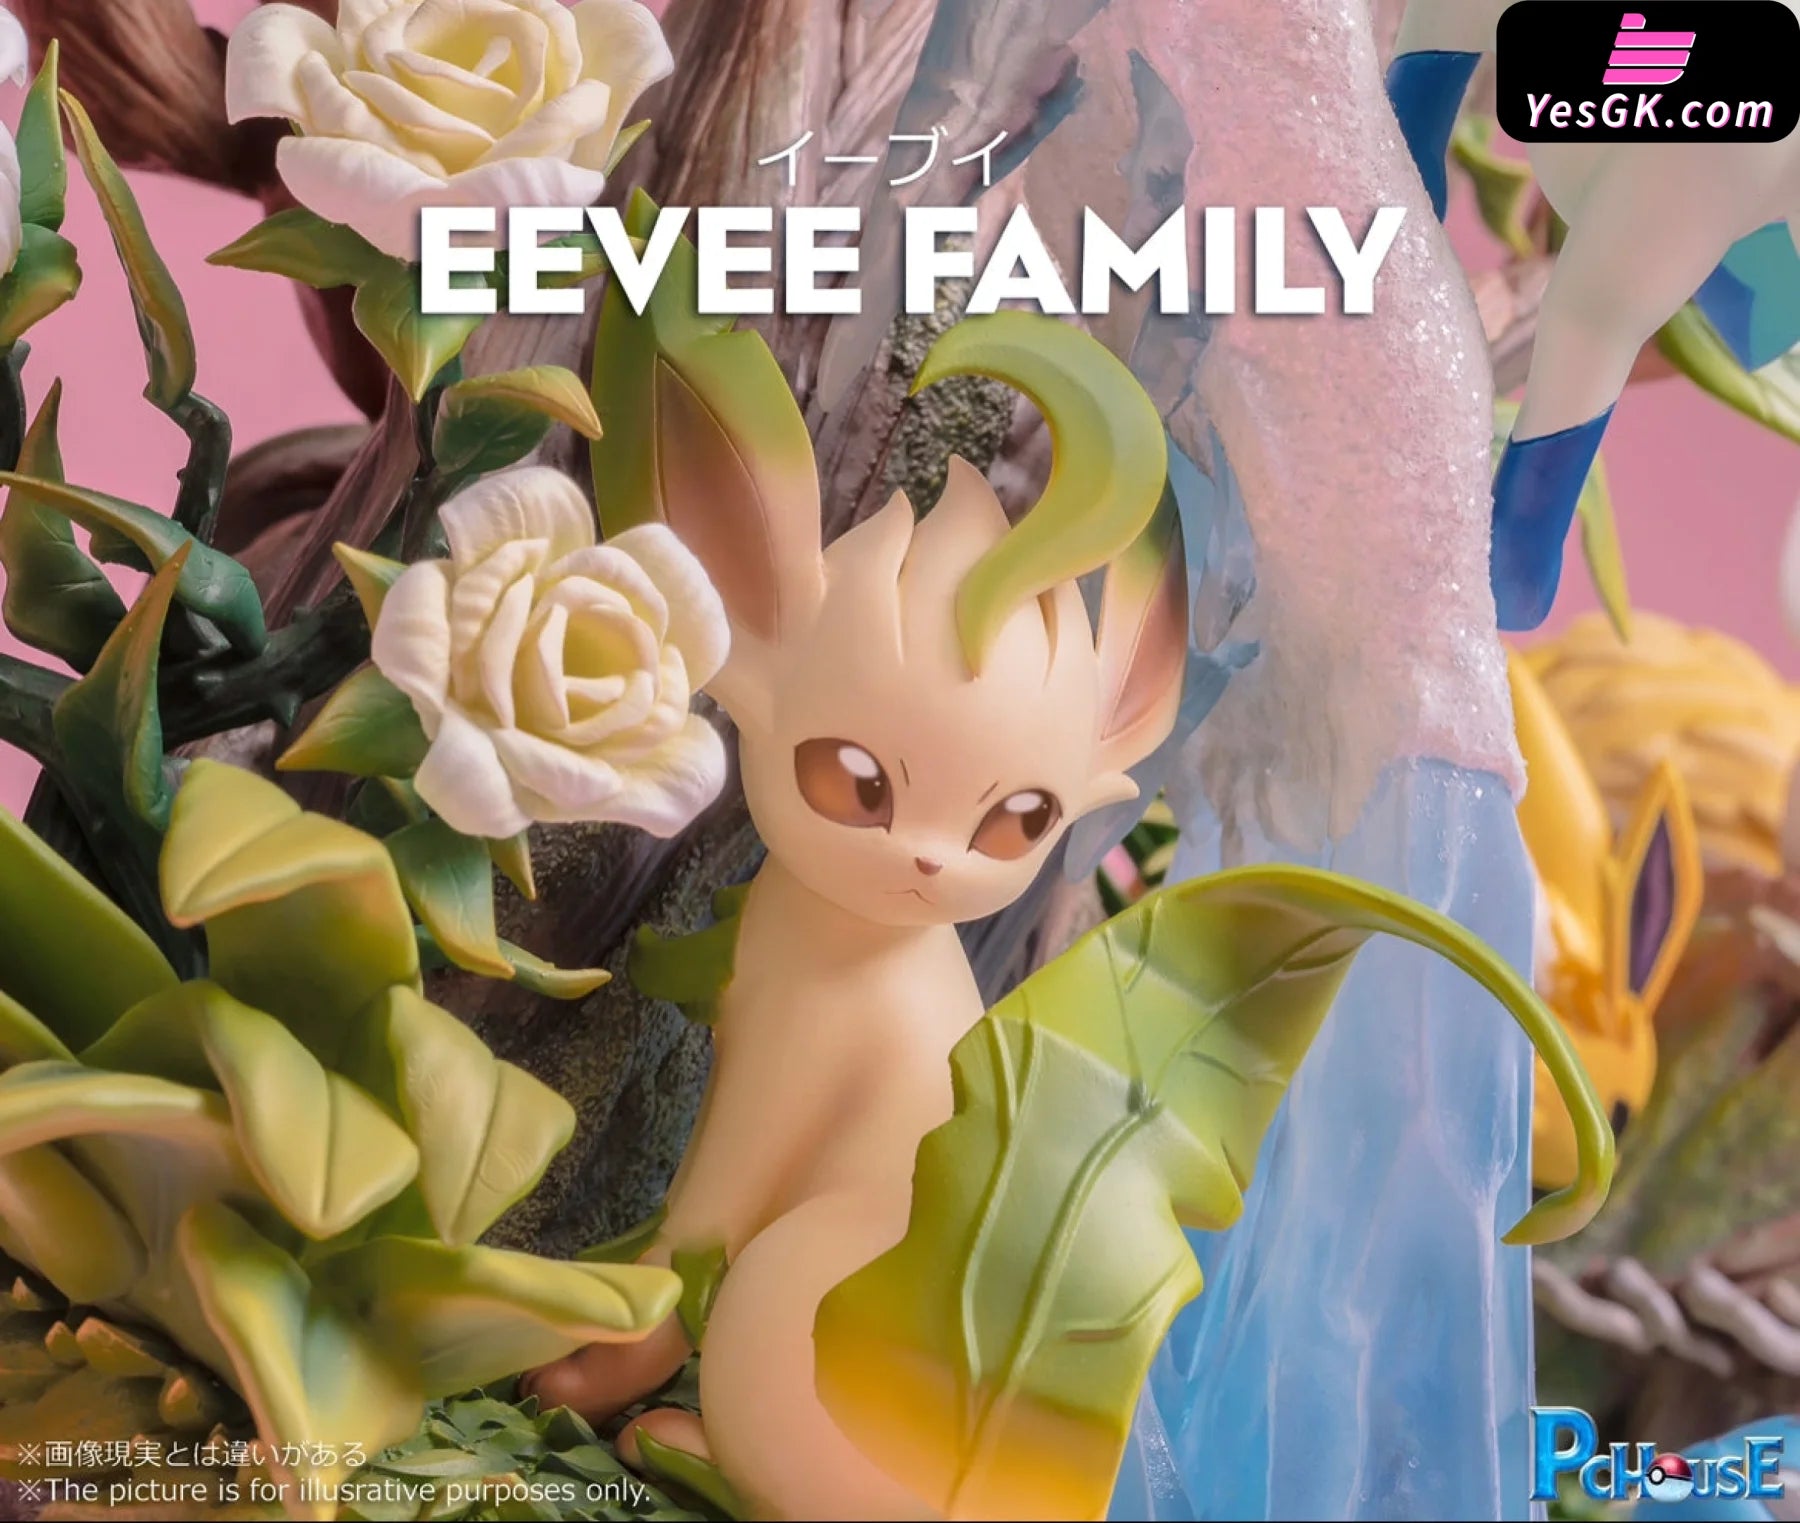 Pokémon Eevee Family Resin Statue - Pc House Studio [In-Stock]